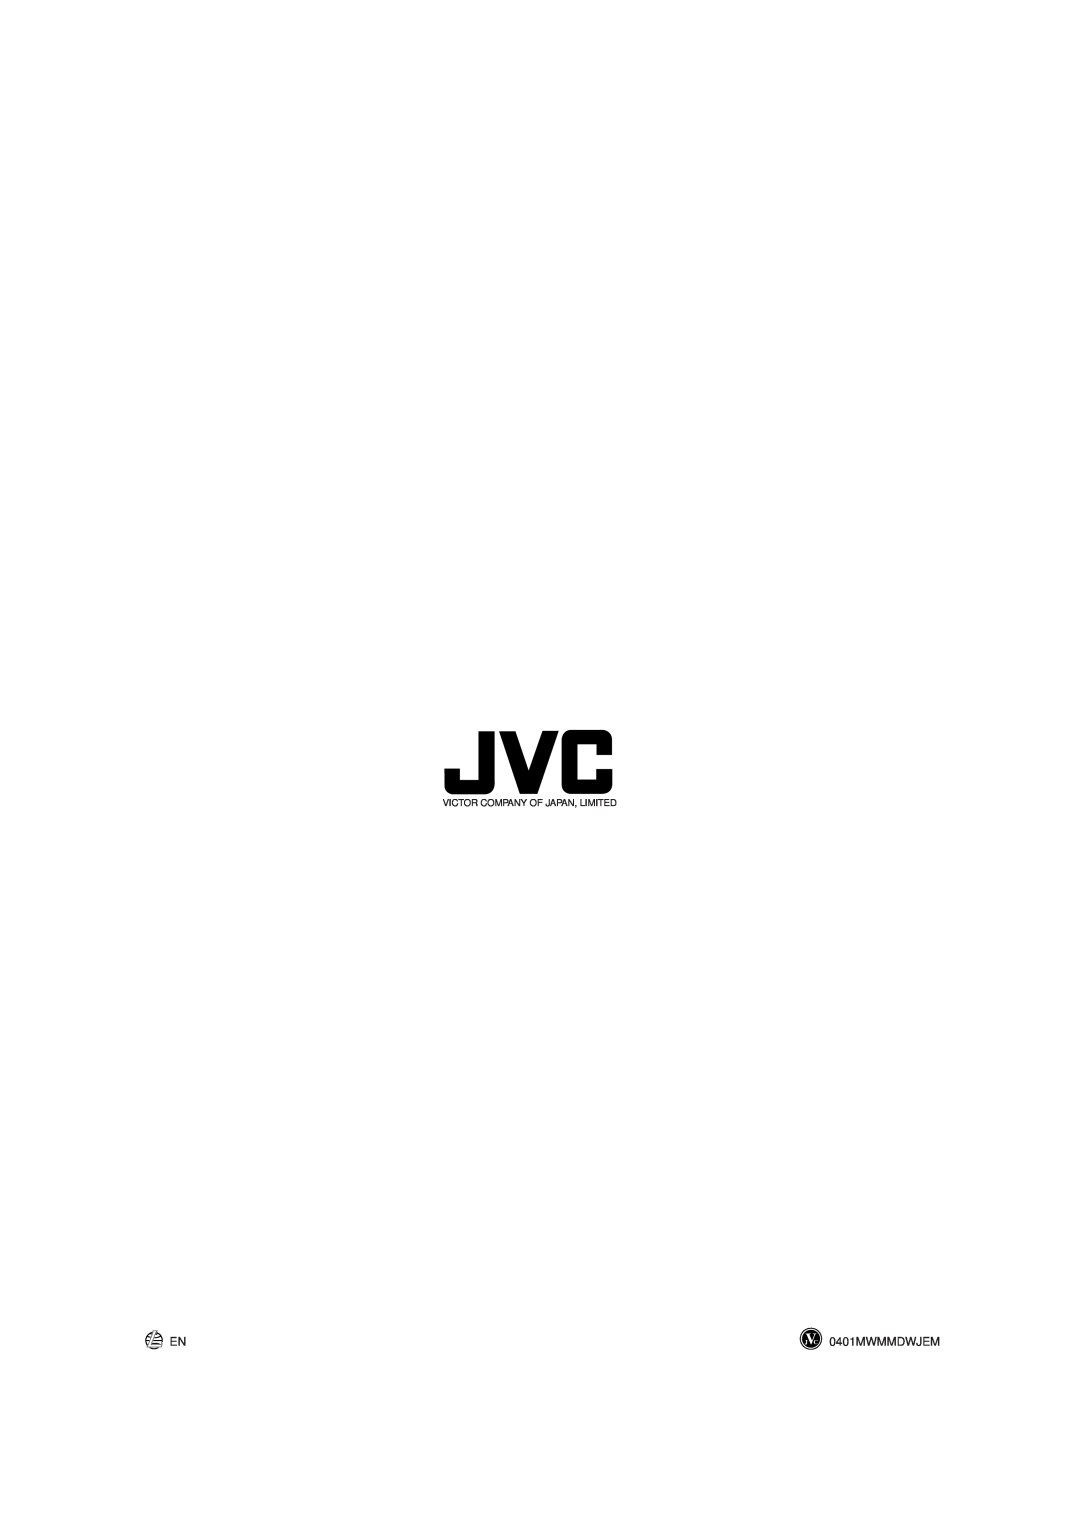 JVC CA-MXGT90, CA-MXGT80, CA-MXG70 manual 0401MWMMDWJEM, Victor Company Of Japan, Limited 